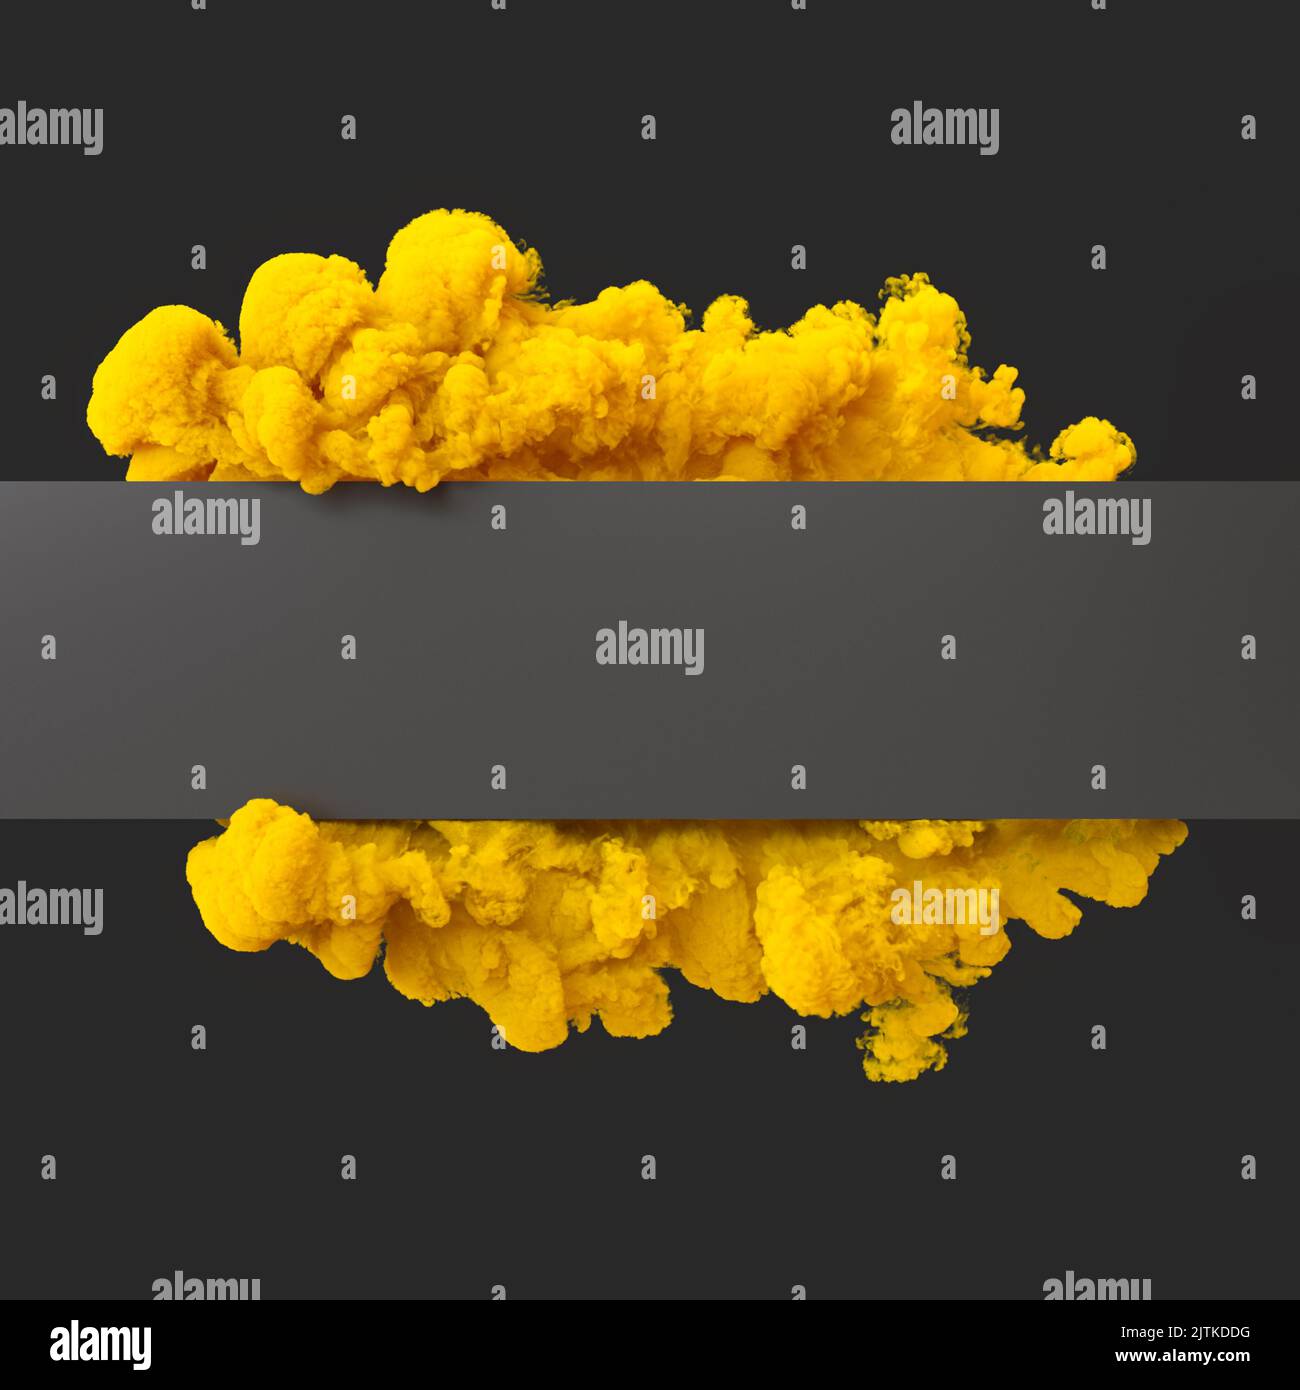 el humo amarillo envuelve una bandera gris sobre un fondo oscuro. presentación 3d Foto de stock